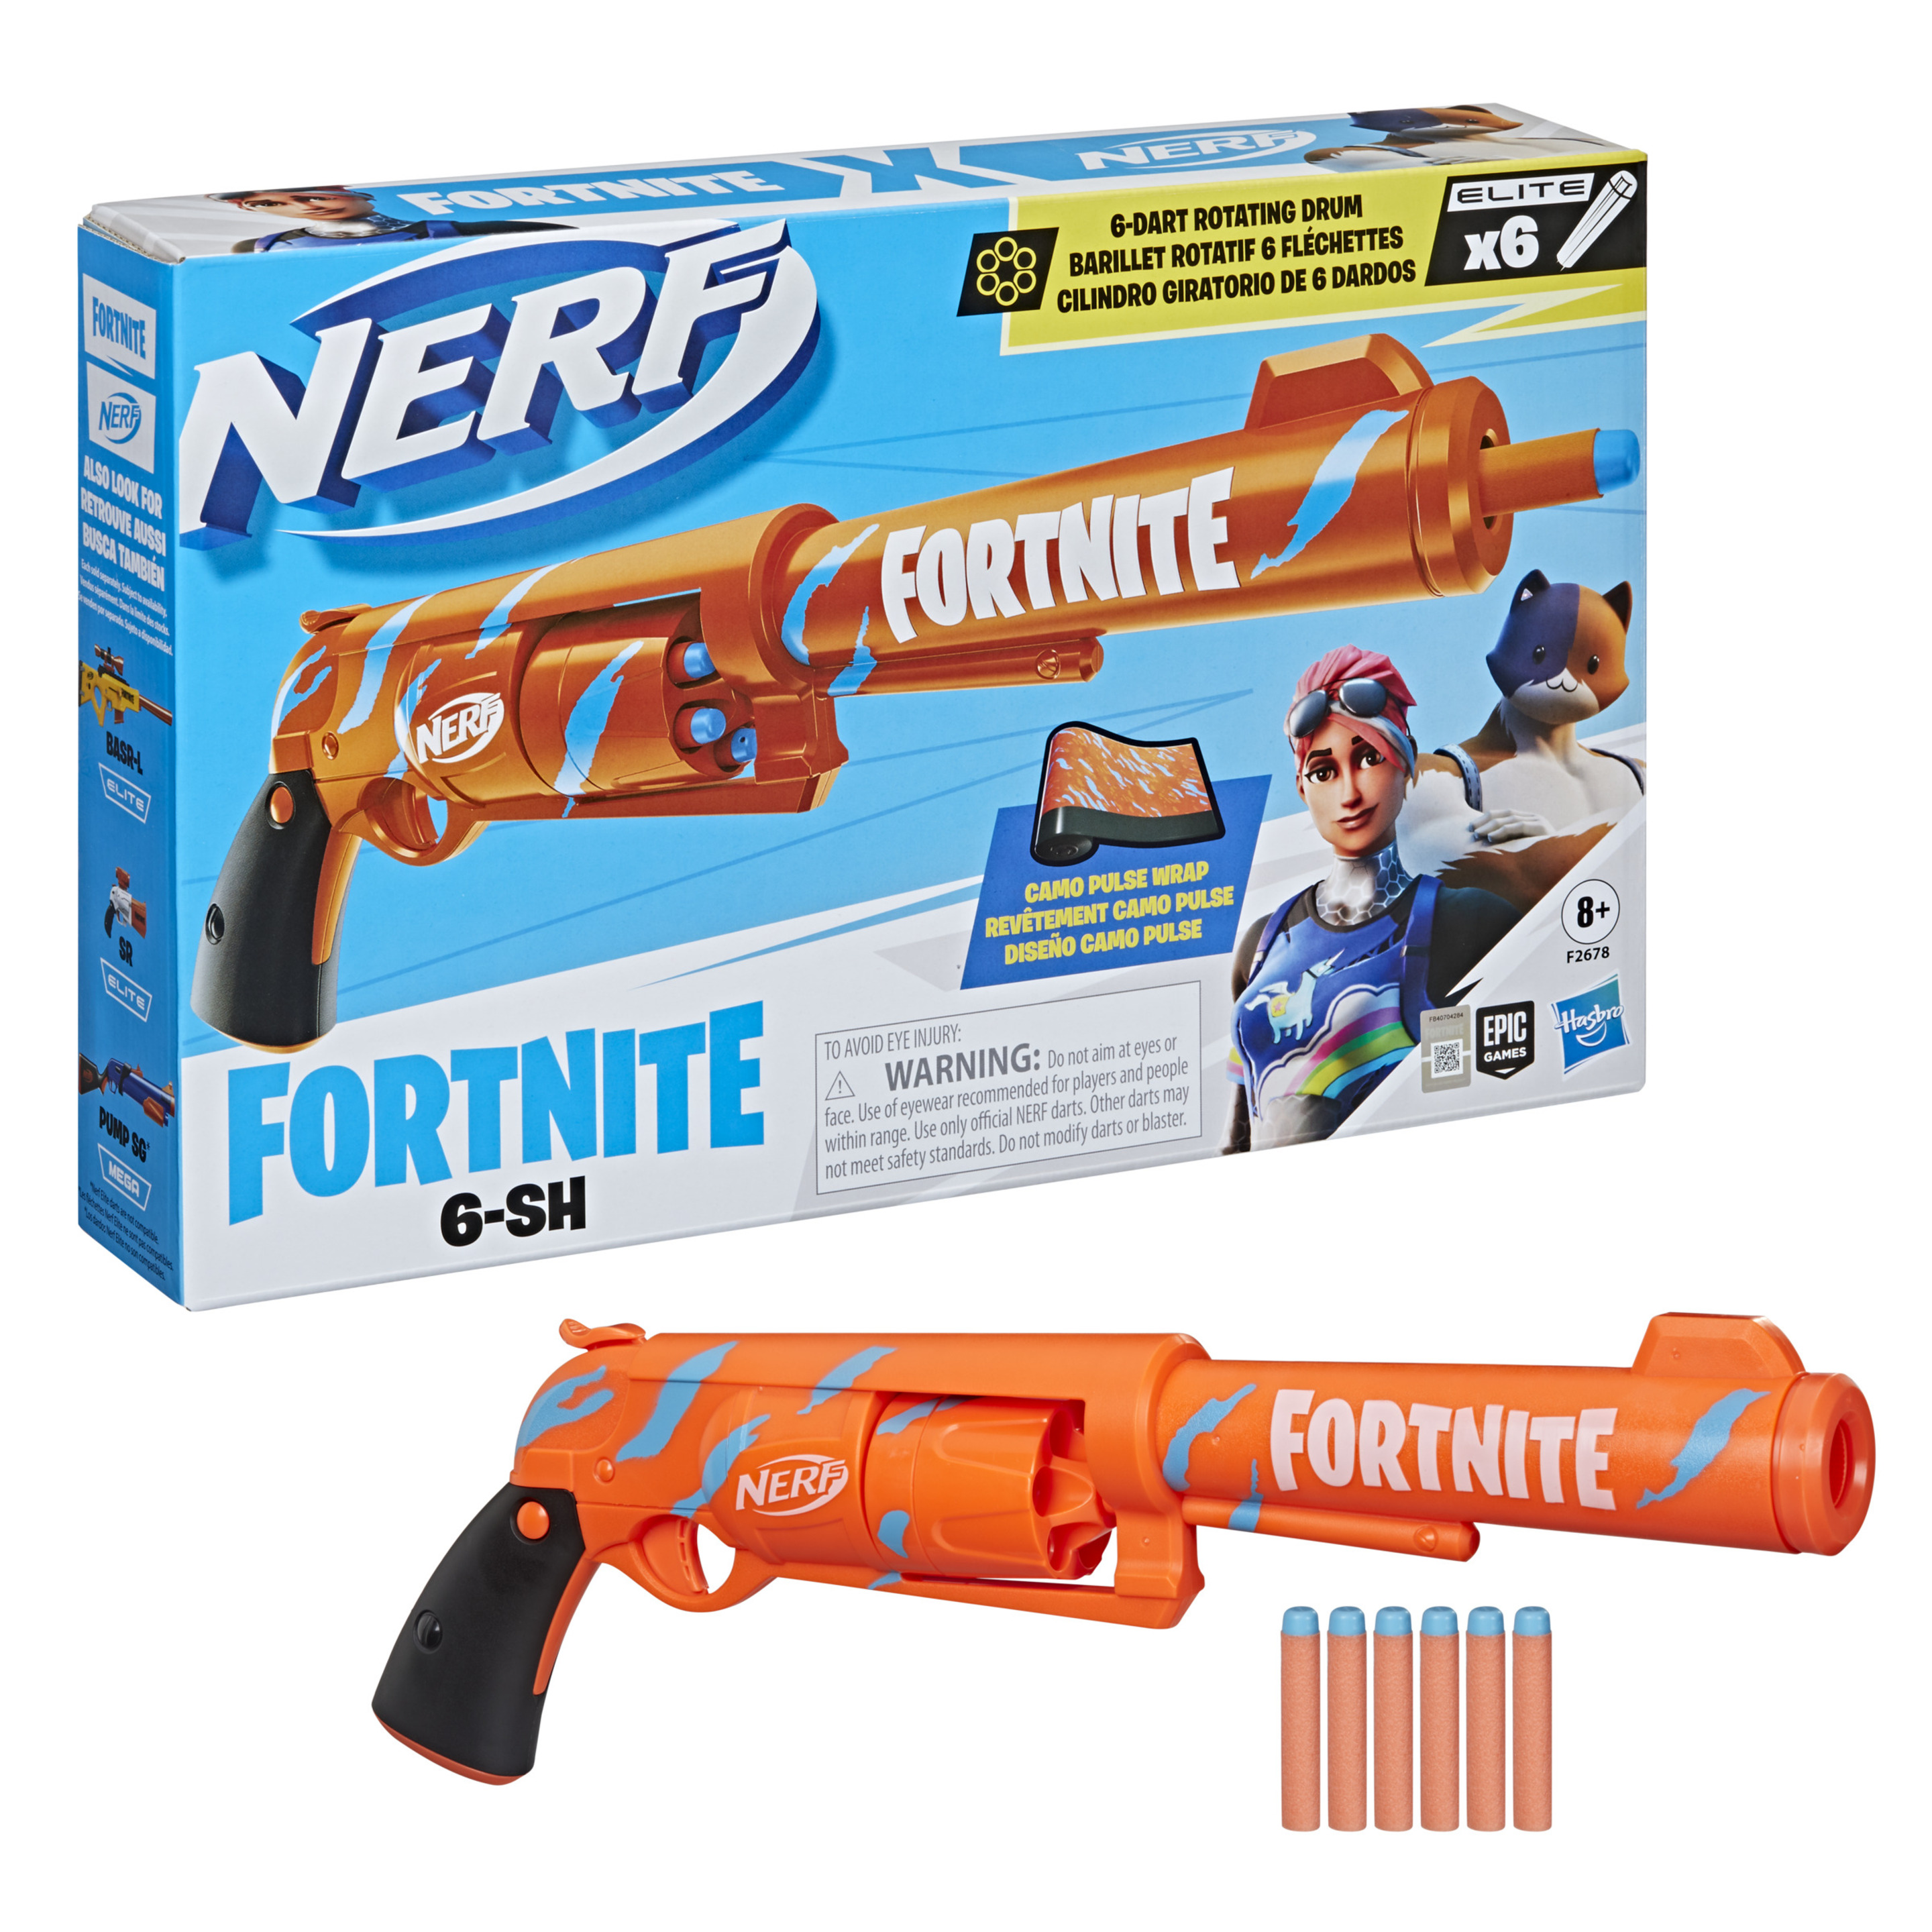 Nerf Fortnite 6-sh - Nerf